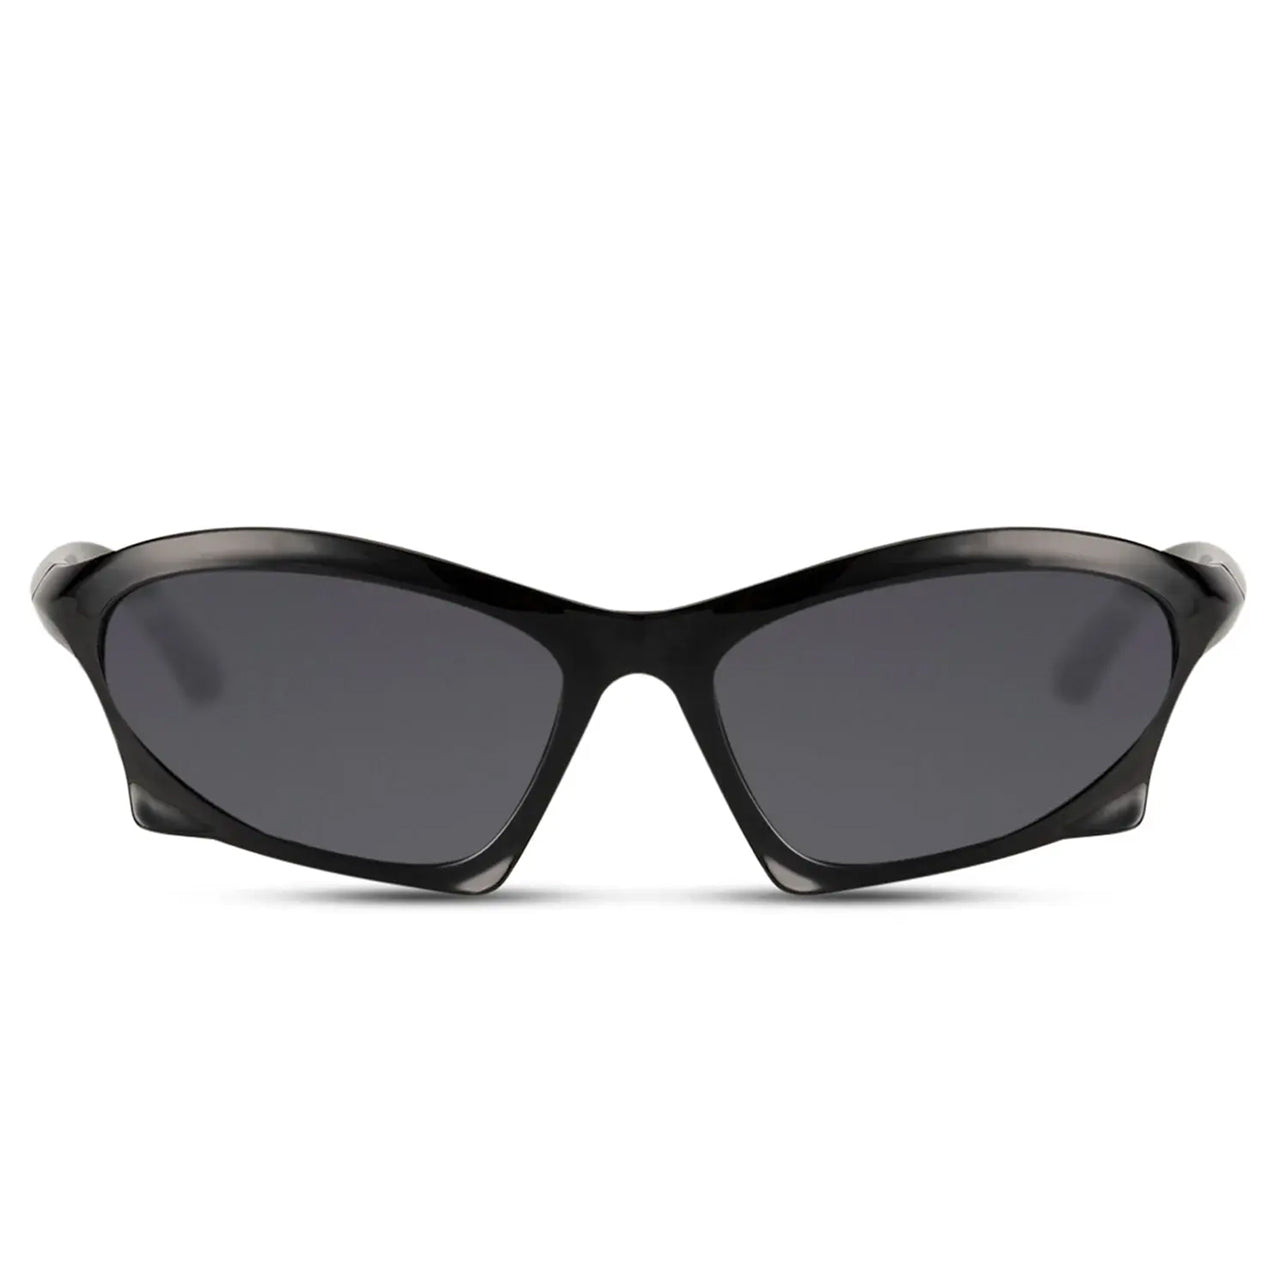 Snash - Sonnenbrille Techno schwarz